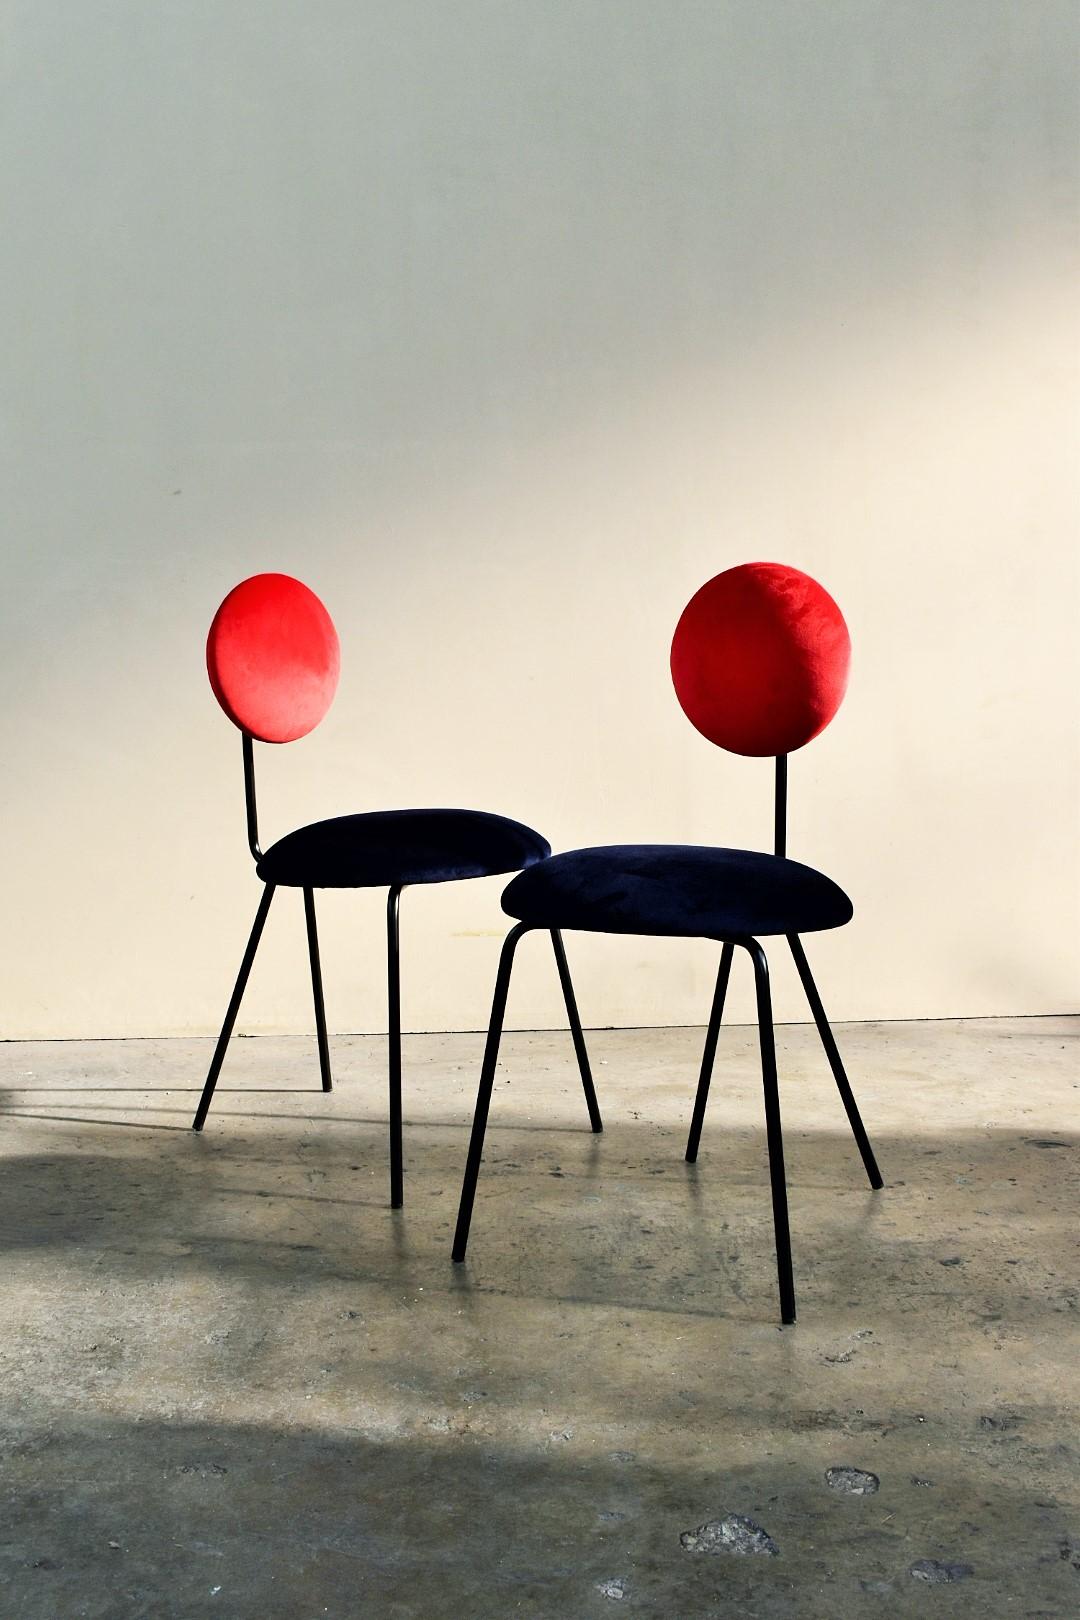 Entwurf des Studios Co.Arch aus Mailand für equilibri-furniture 
è una sedia dalle forme geometrice pensate per esaltare le superfici soffici. Disegno della struttura in sottile tubolare metallico enfatizza il velluto delle imbottiture e del morbido